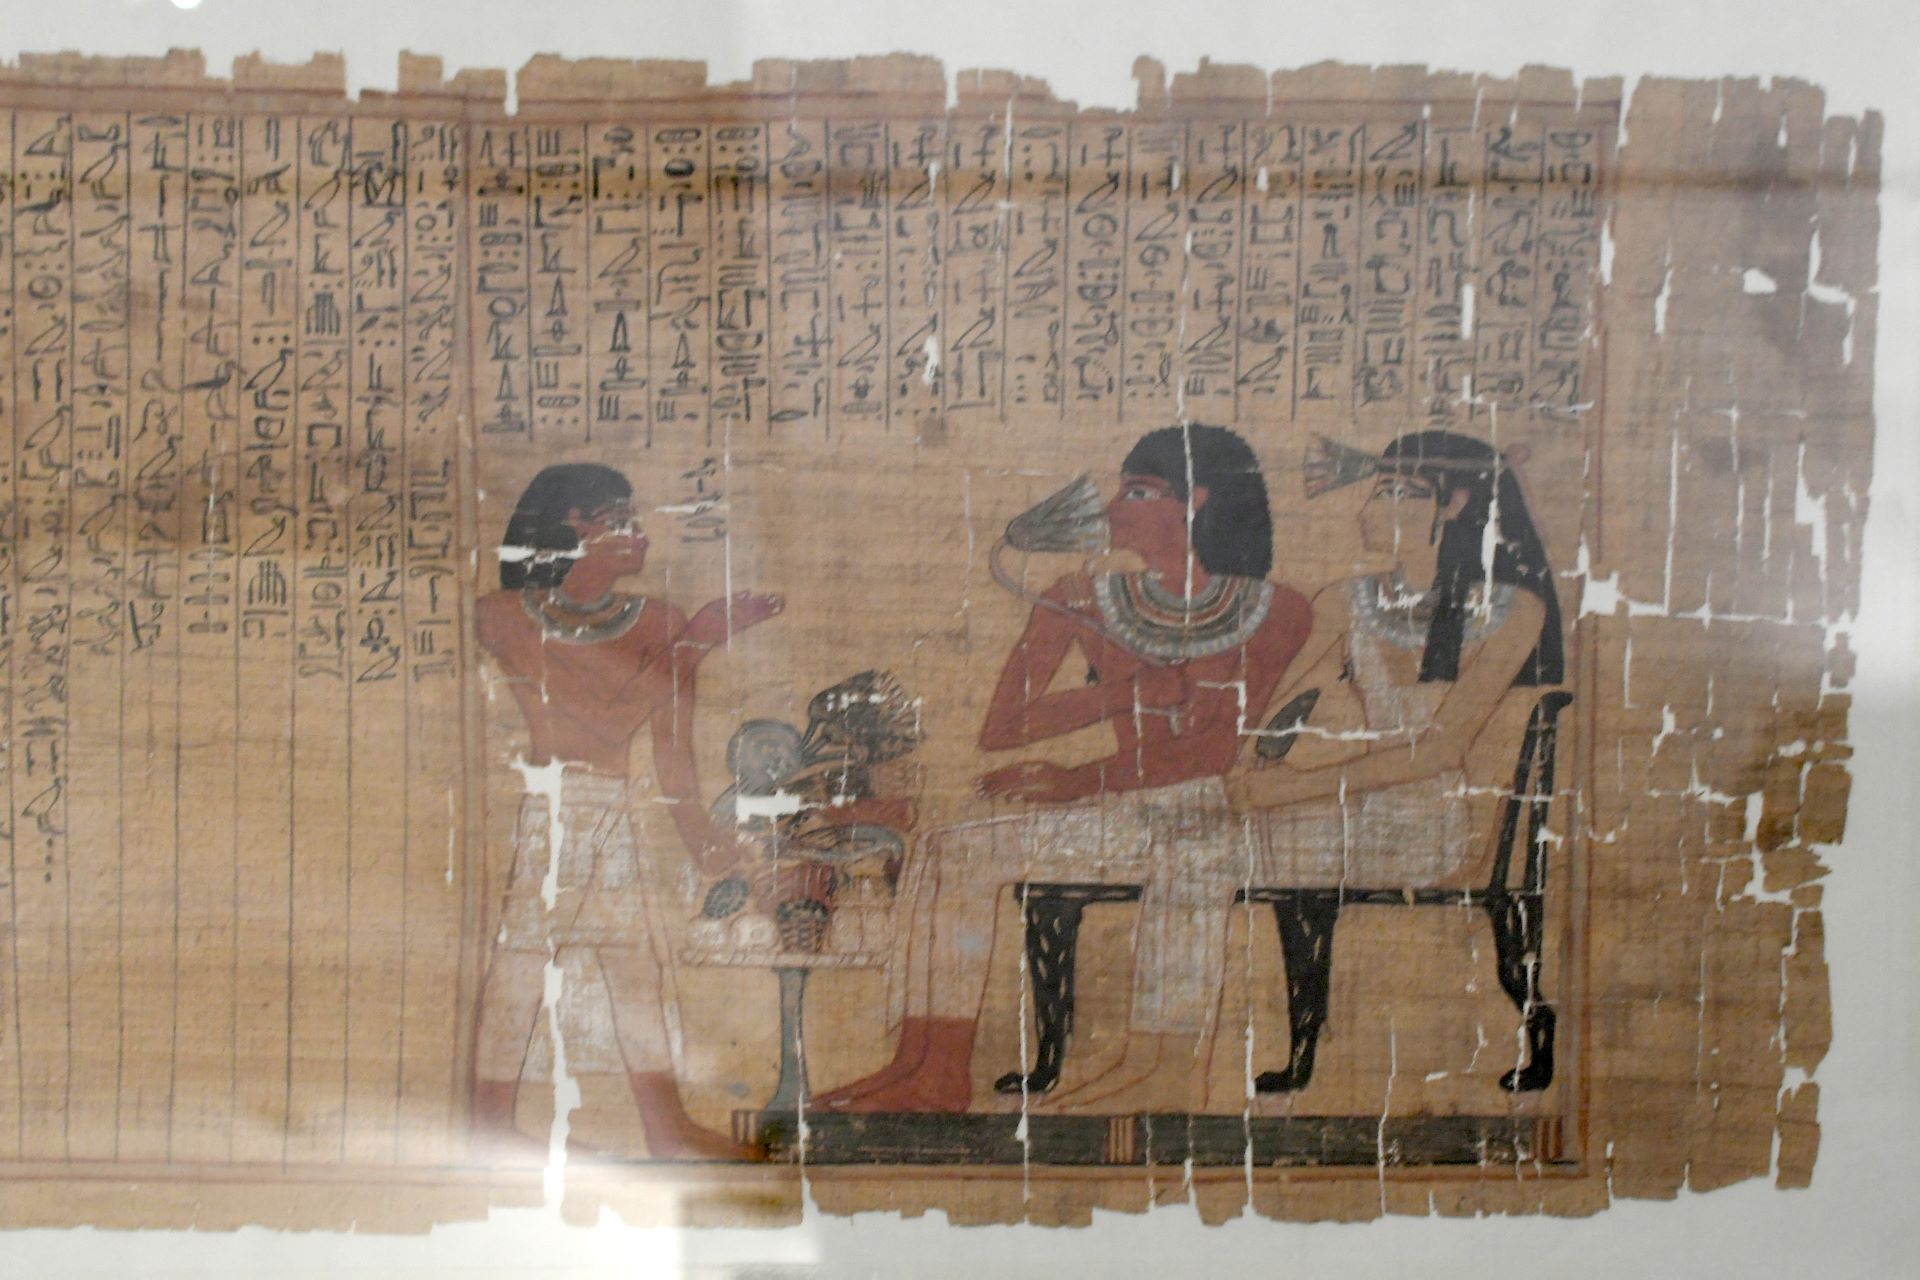 Totenbuch des Sesostris, Kursivhieroglyphen, 18. Dynastie des Neues Reichs (15. Jhdt.v.Chr.)